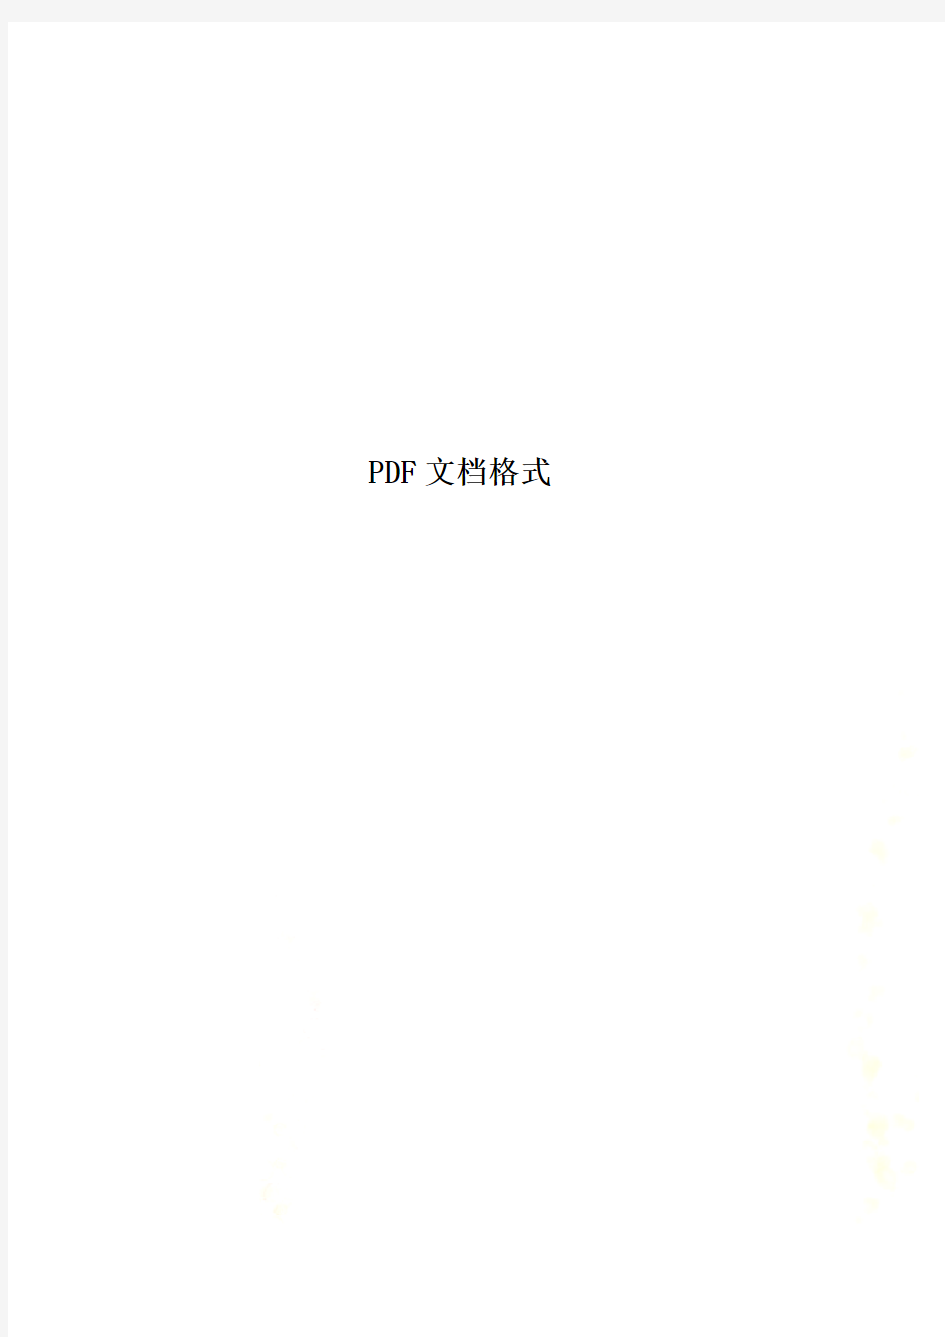 PDF文档格式